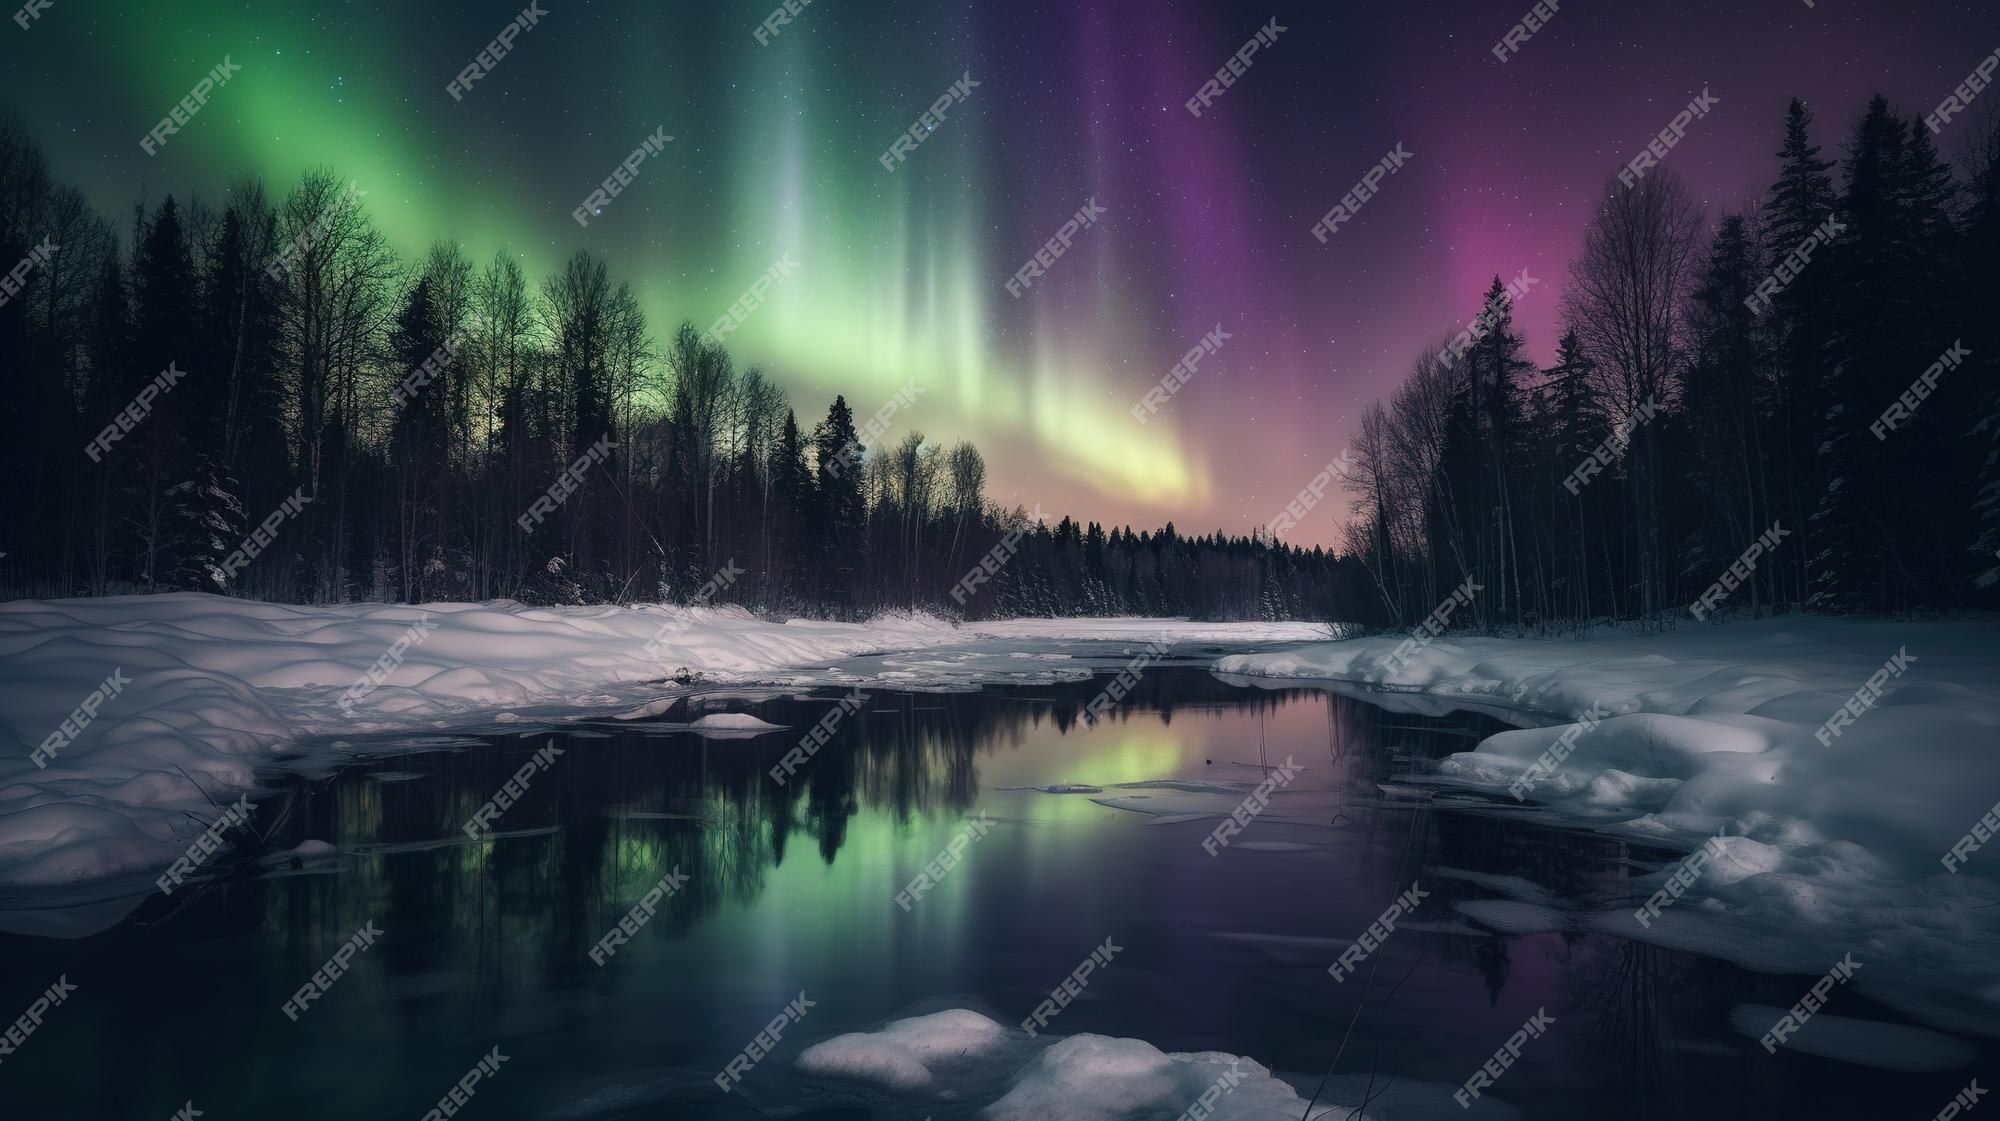  Polarlicht Hintergrundbild 2000x1121. Das nordlicht leuchtet am himmel über einem fluss